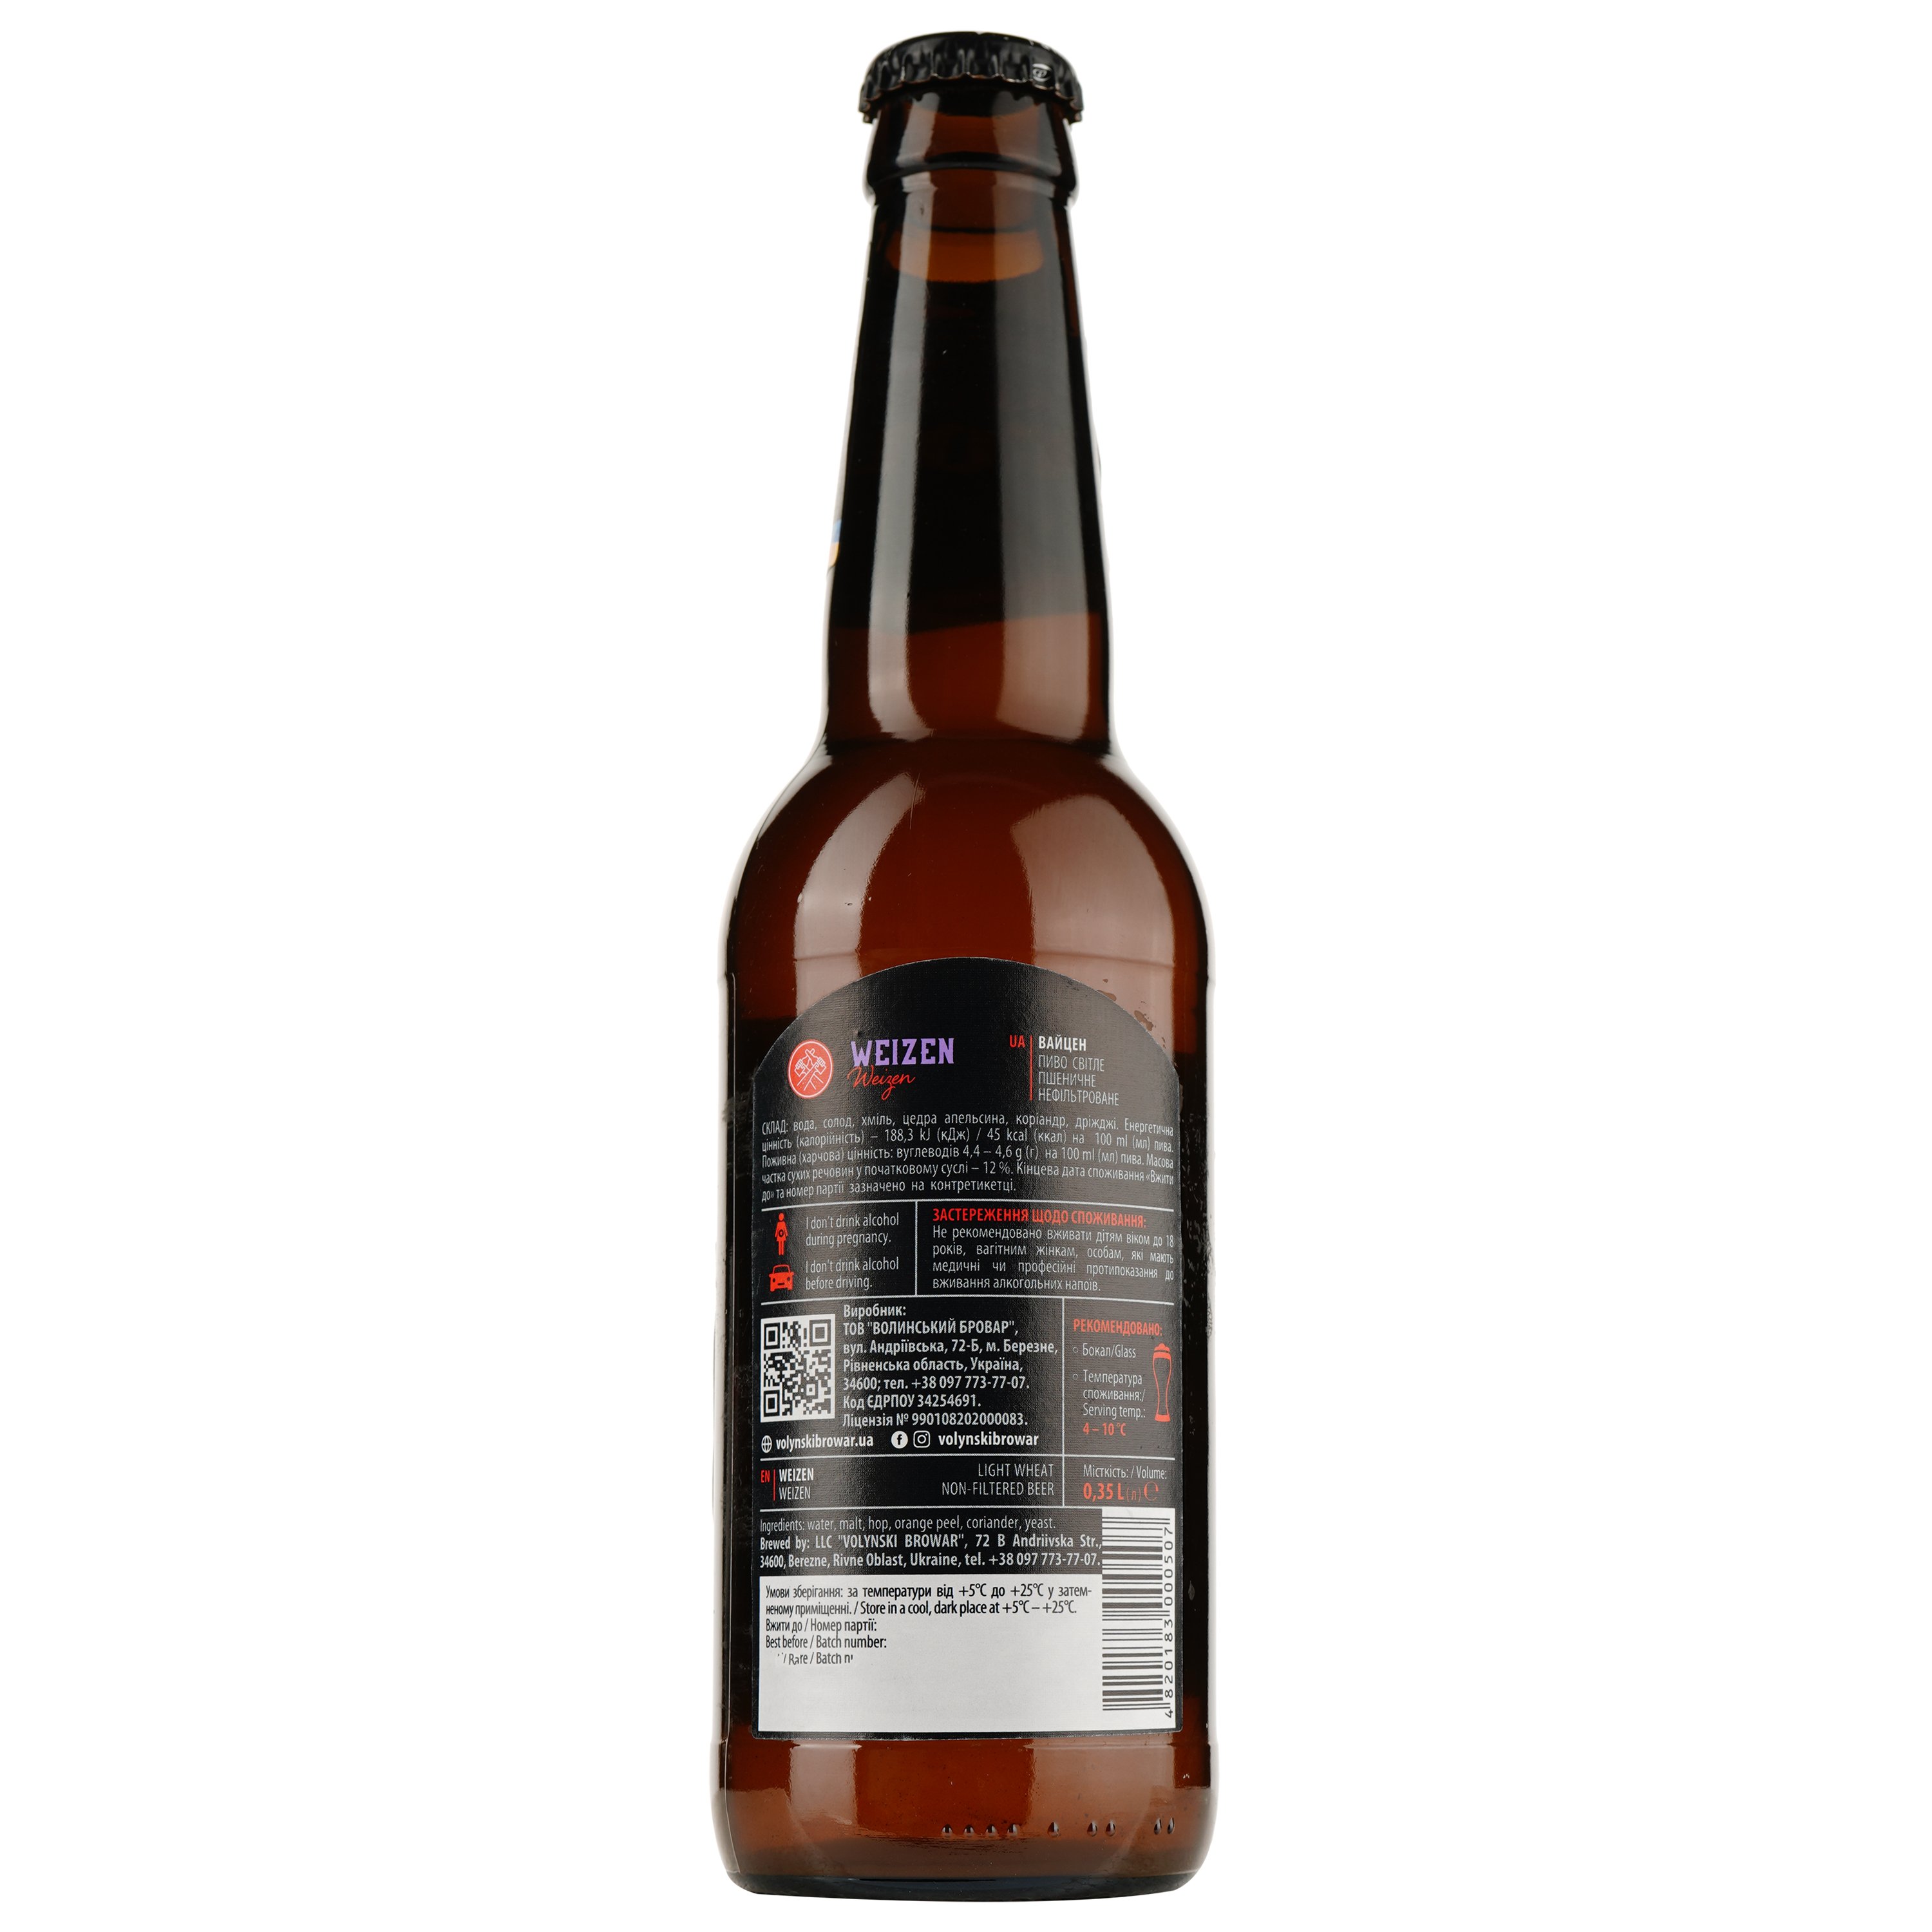 Подарочный набор пива Volynski Browar, 3,8-5,8%, 1,4 л (4 шт. по 0,35 л) + Бокал Somelier, 0,4 л - фото 5